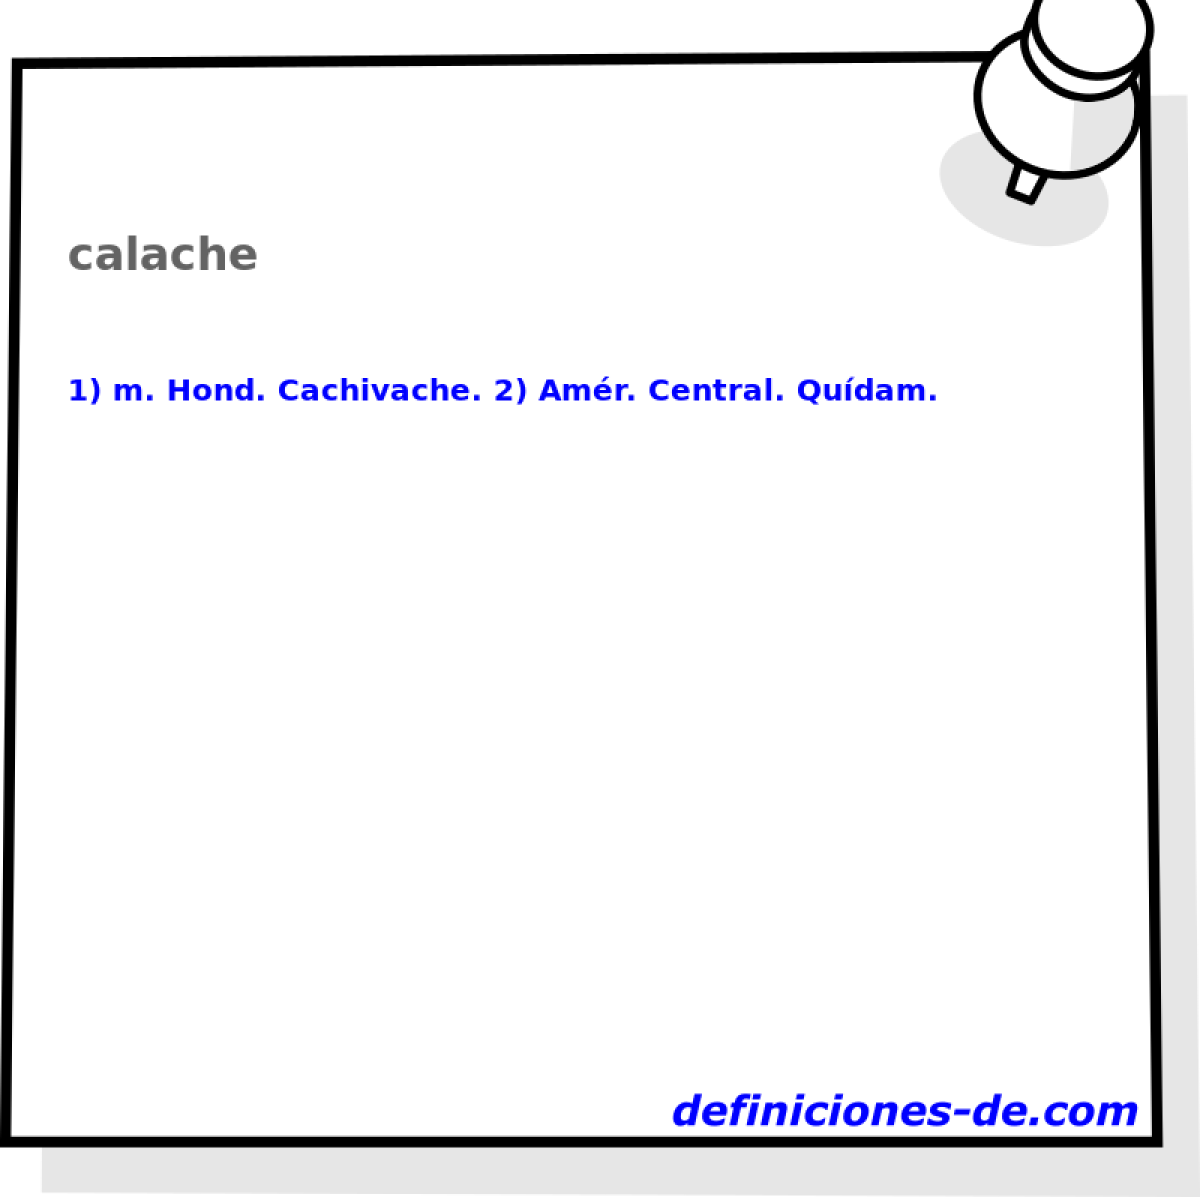 calache 